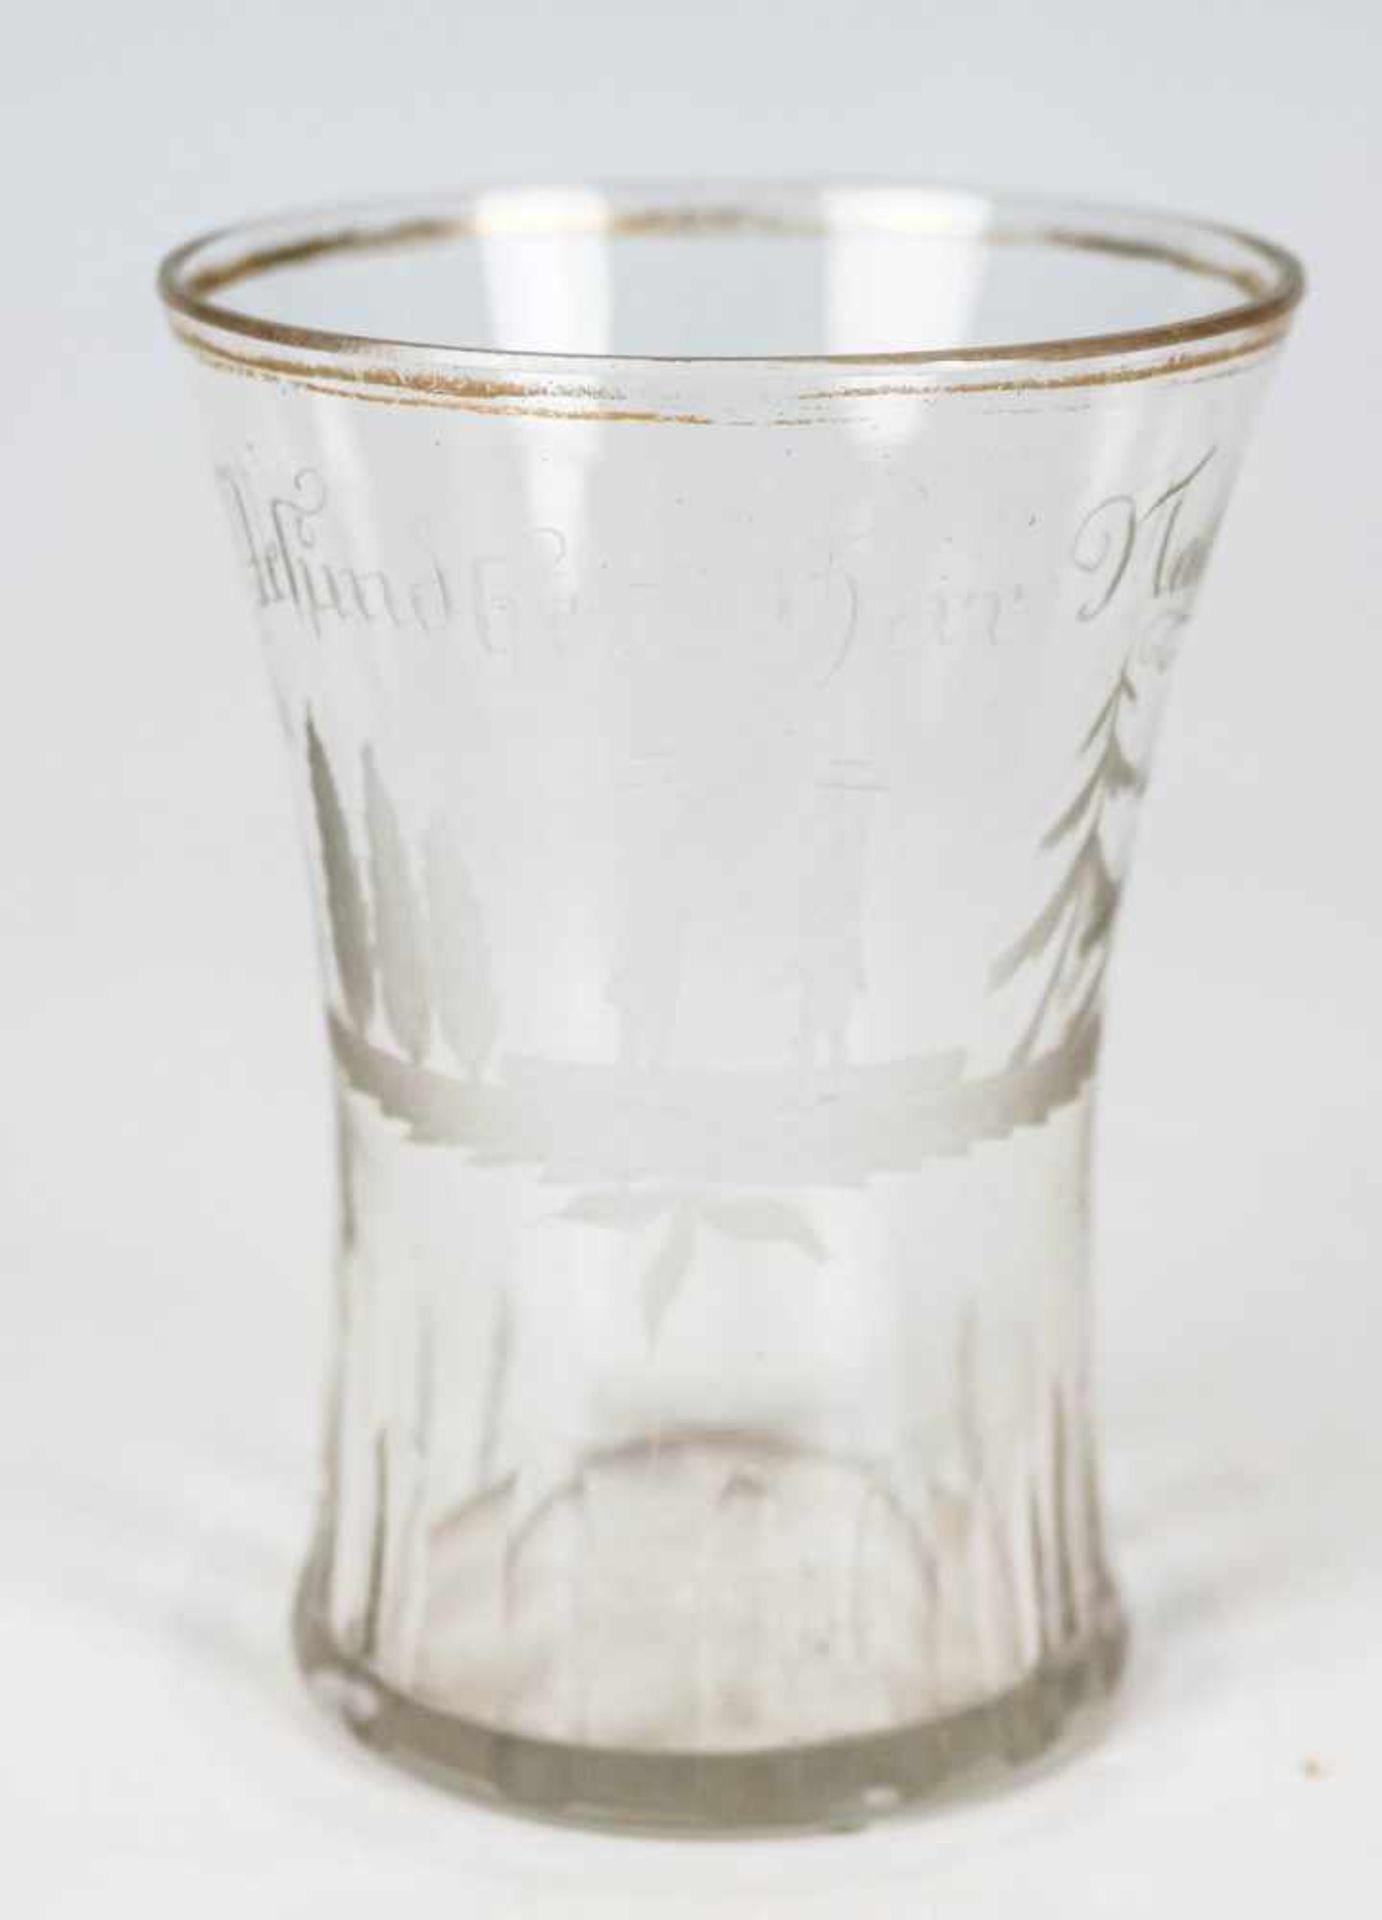 Freundschaftsbecher Böhmen, um 1825Farbloses Glas mit Schliff und Gravur. Konkave Form. Schälborte